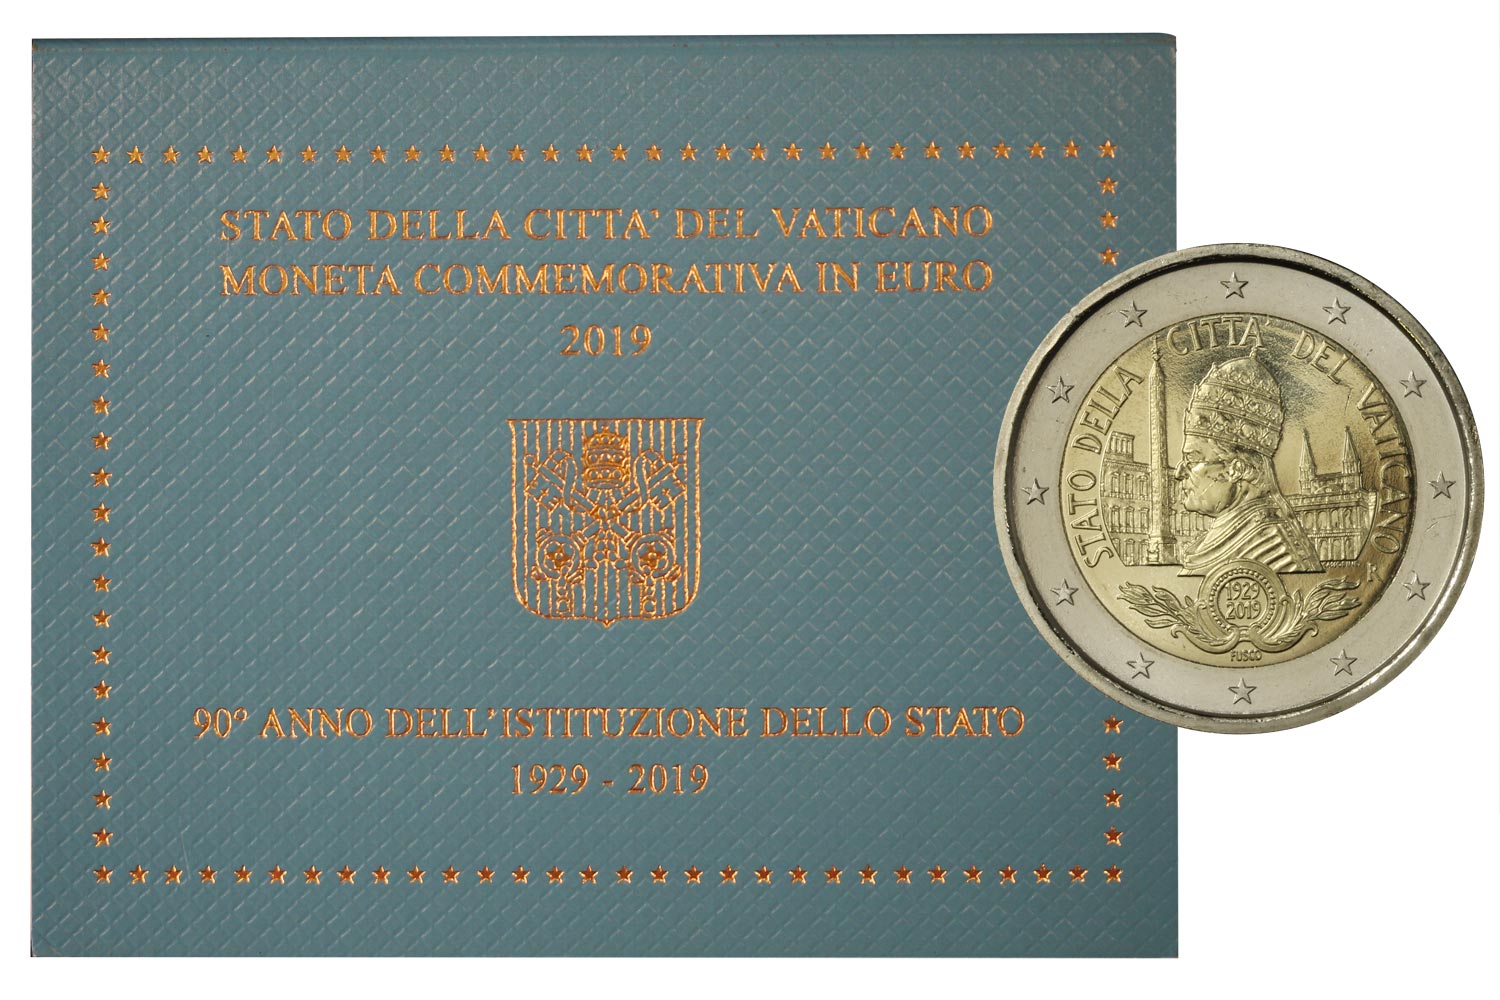 90 anno dell'istituzione dello Stato Citt del Vaticano - 2 Euro in confezione ufficiale